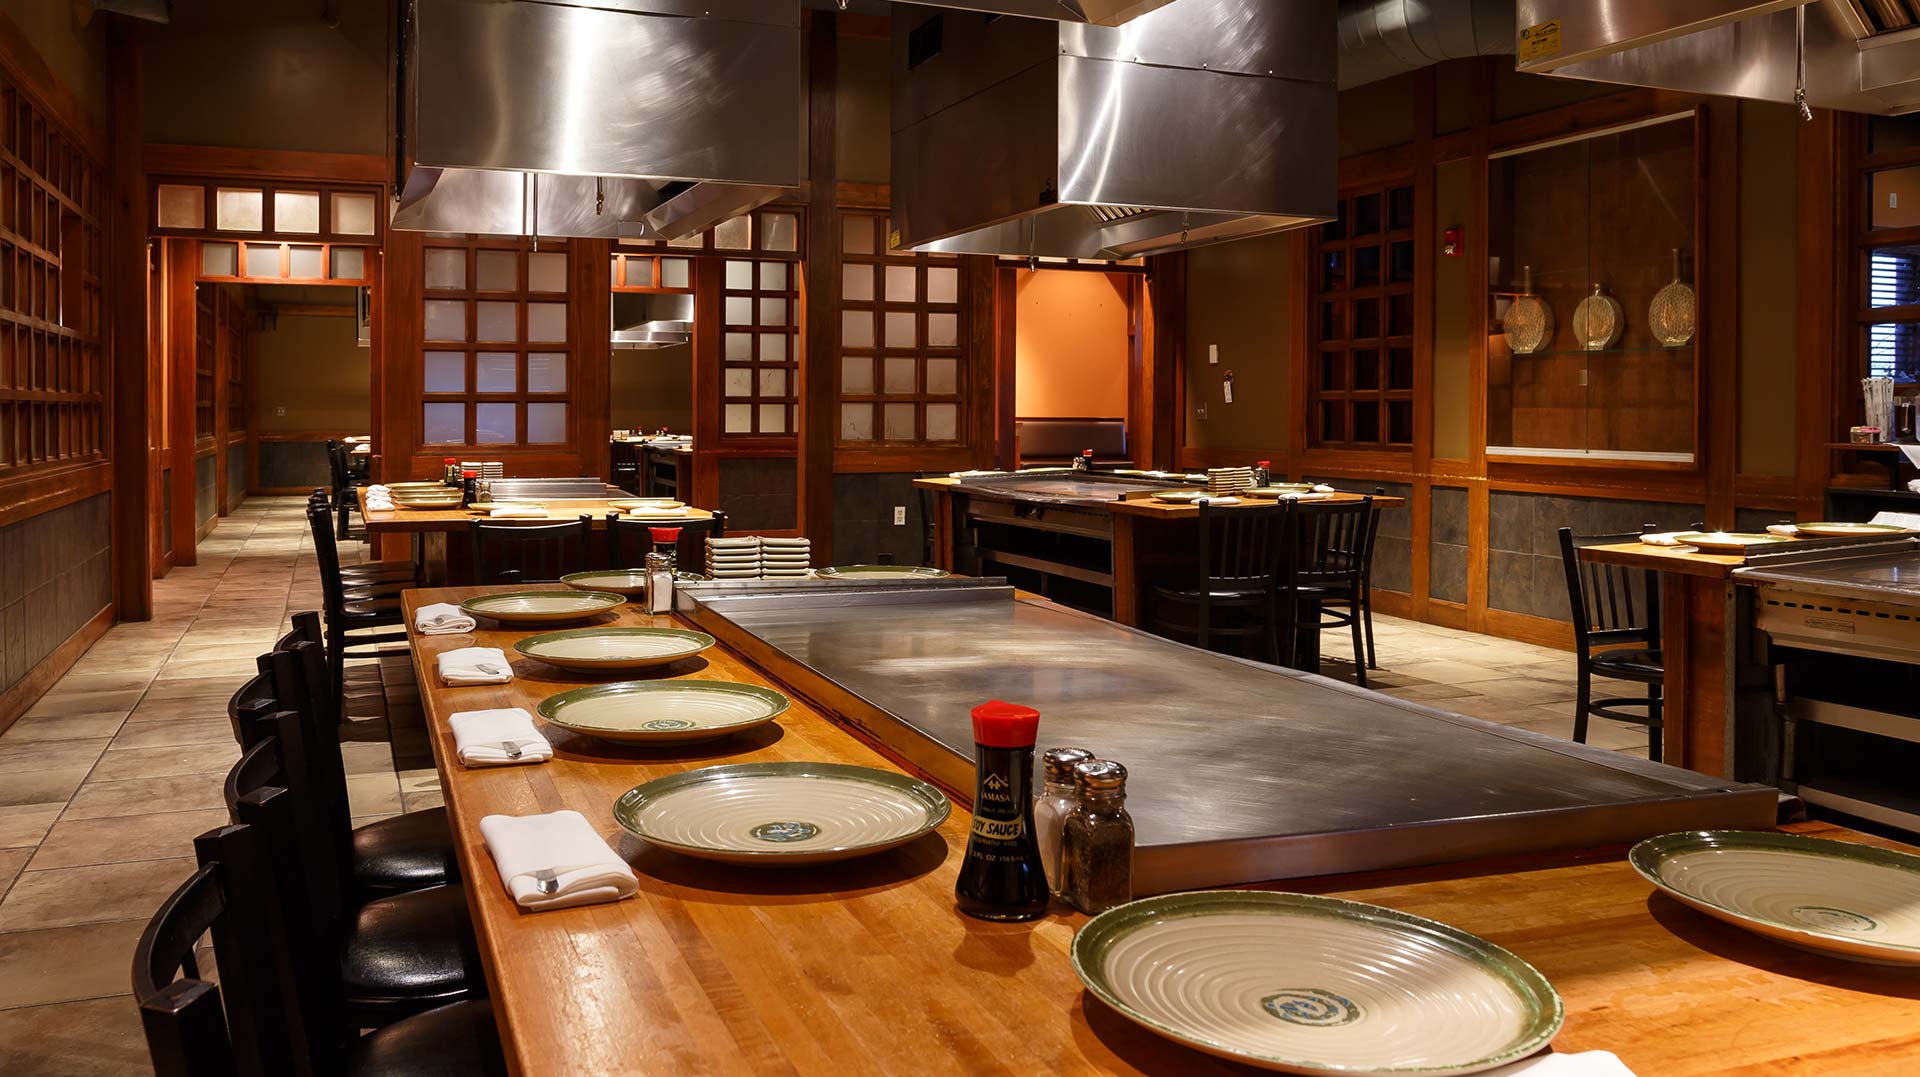 Kabuto Japanese Restaurant | Goodlettsville, TN | (615) 851-4004